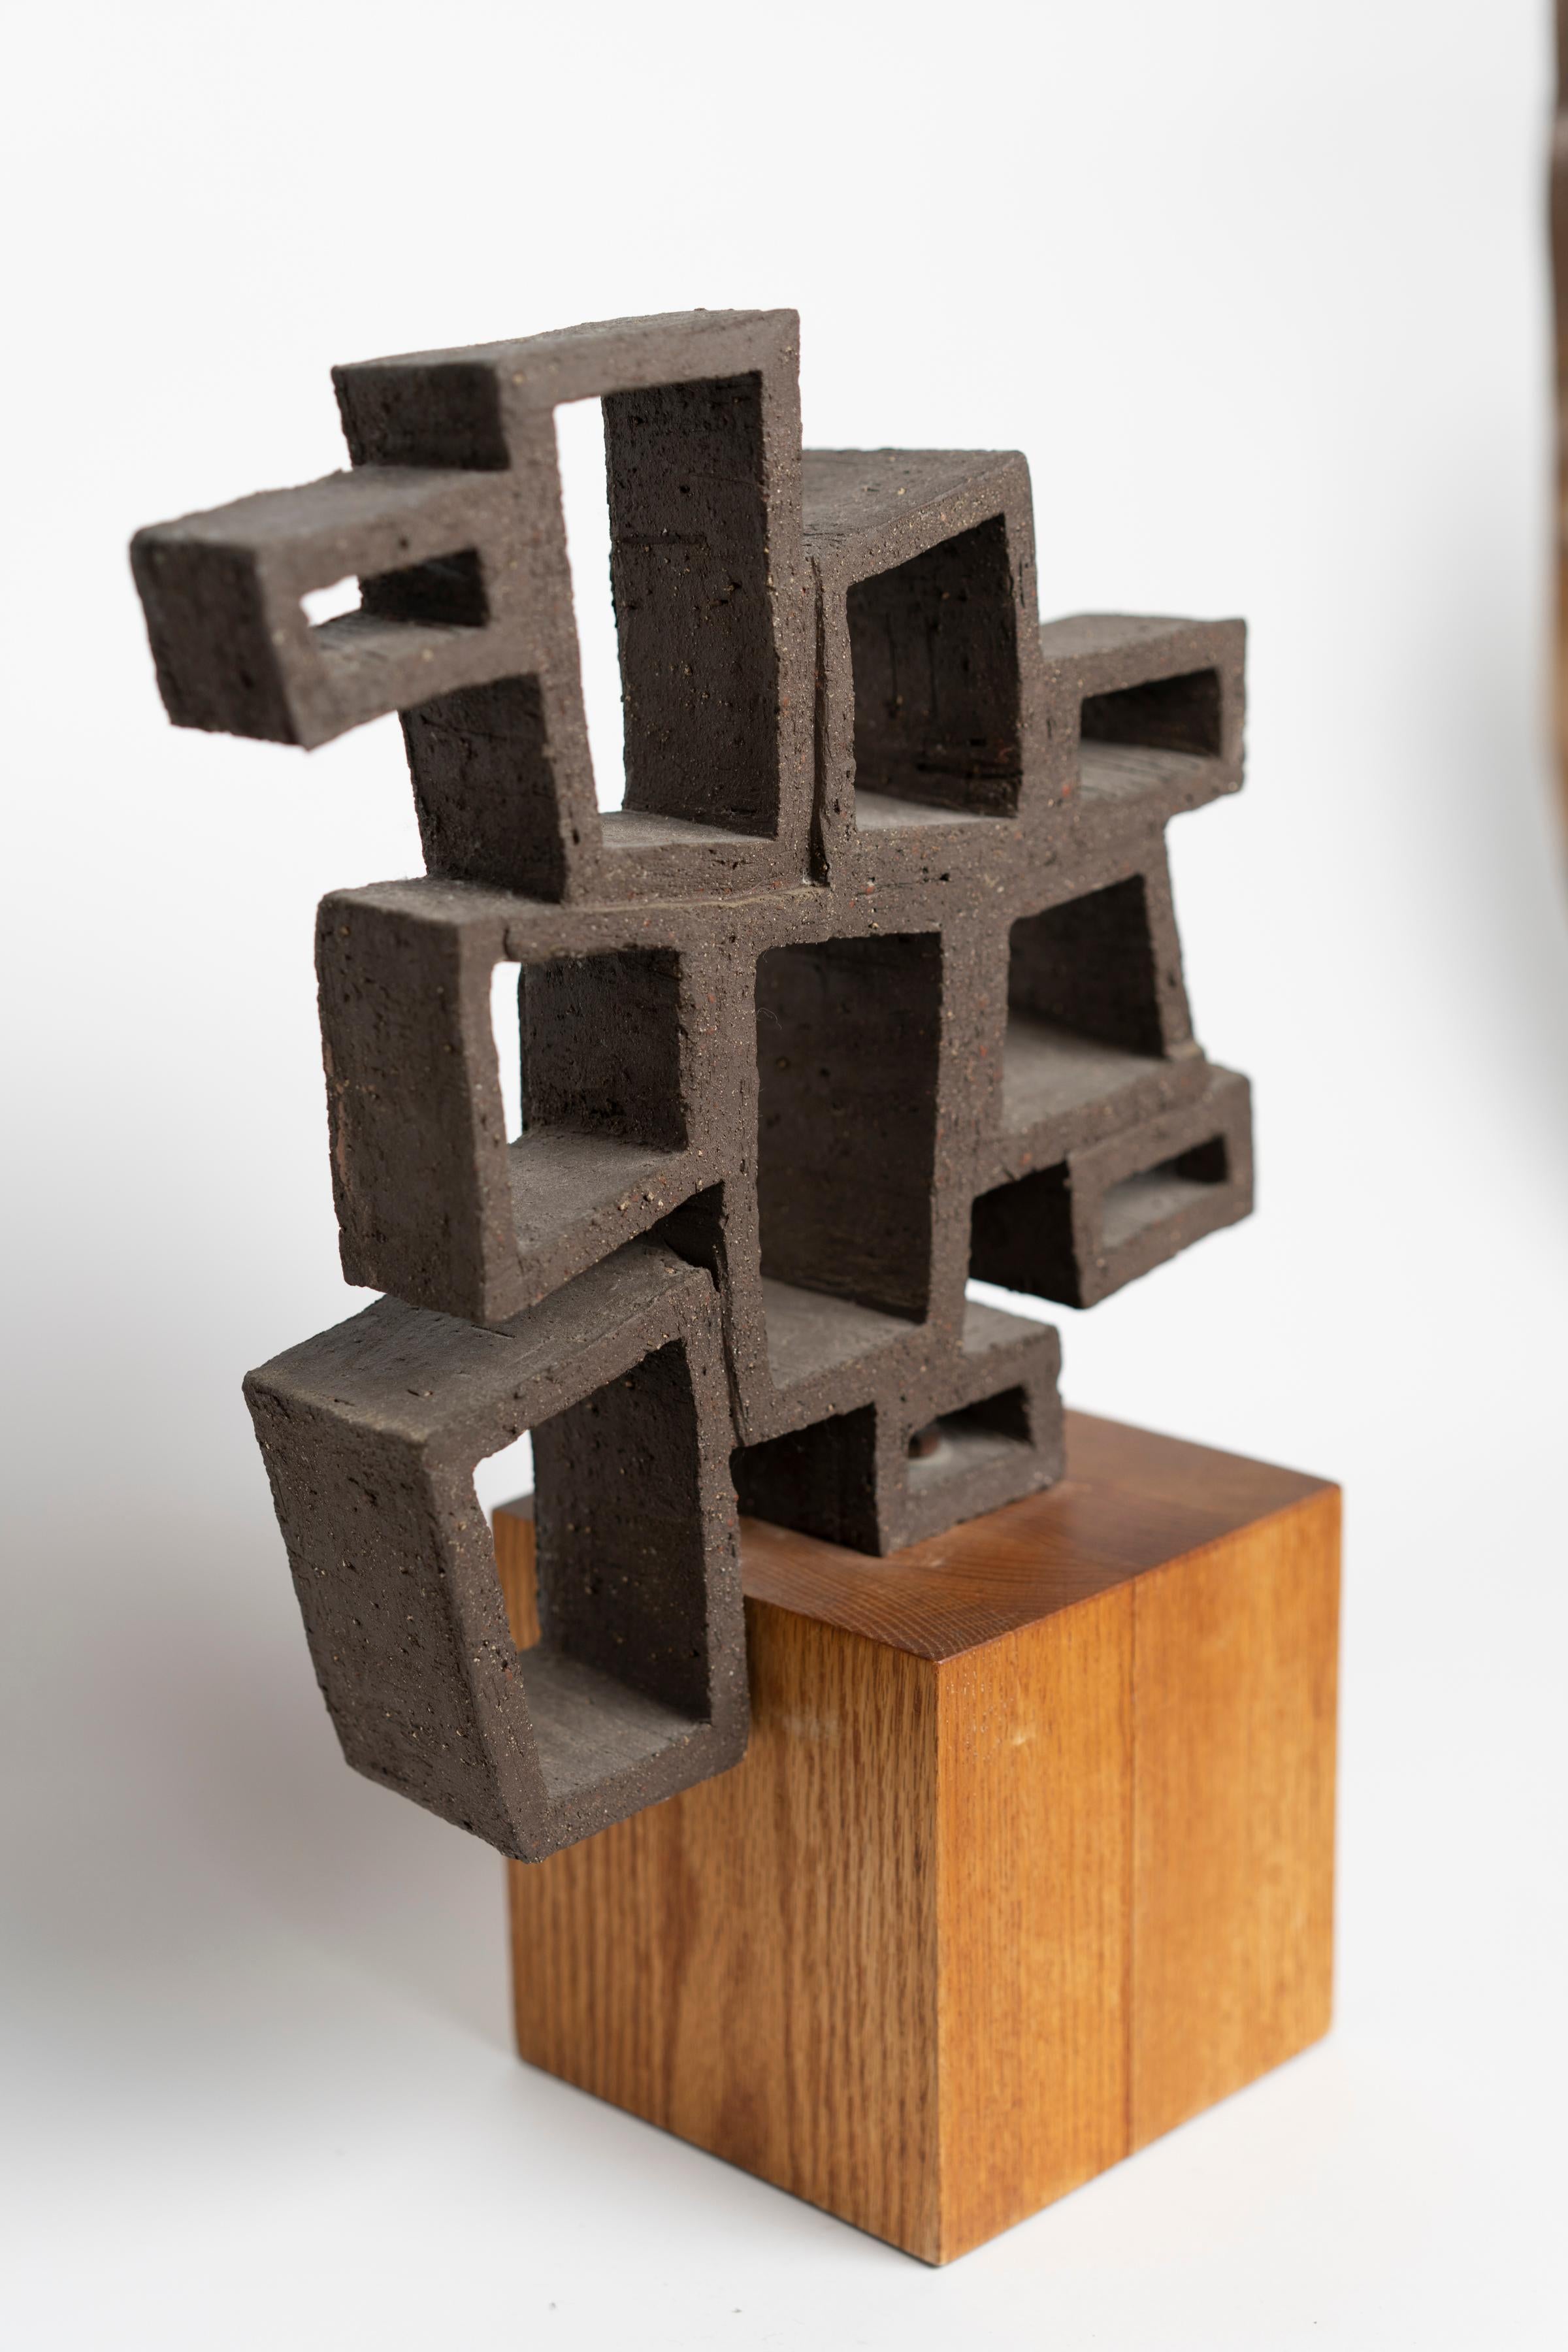 Sculpture réticulée abstraite en céramique des années 1970 reposant sur une base en bois.